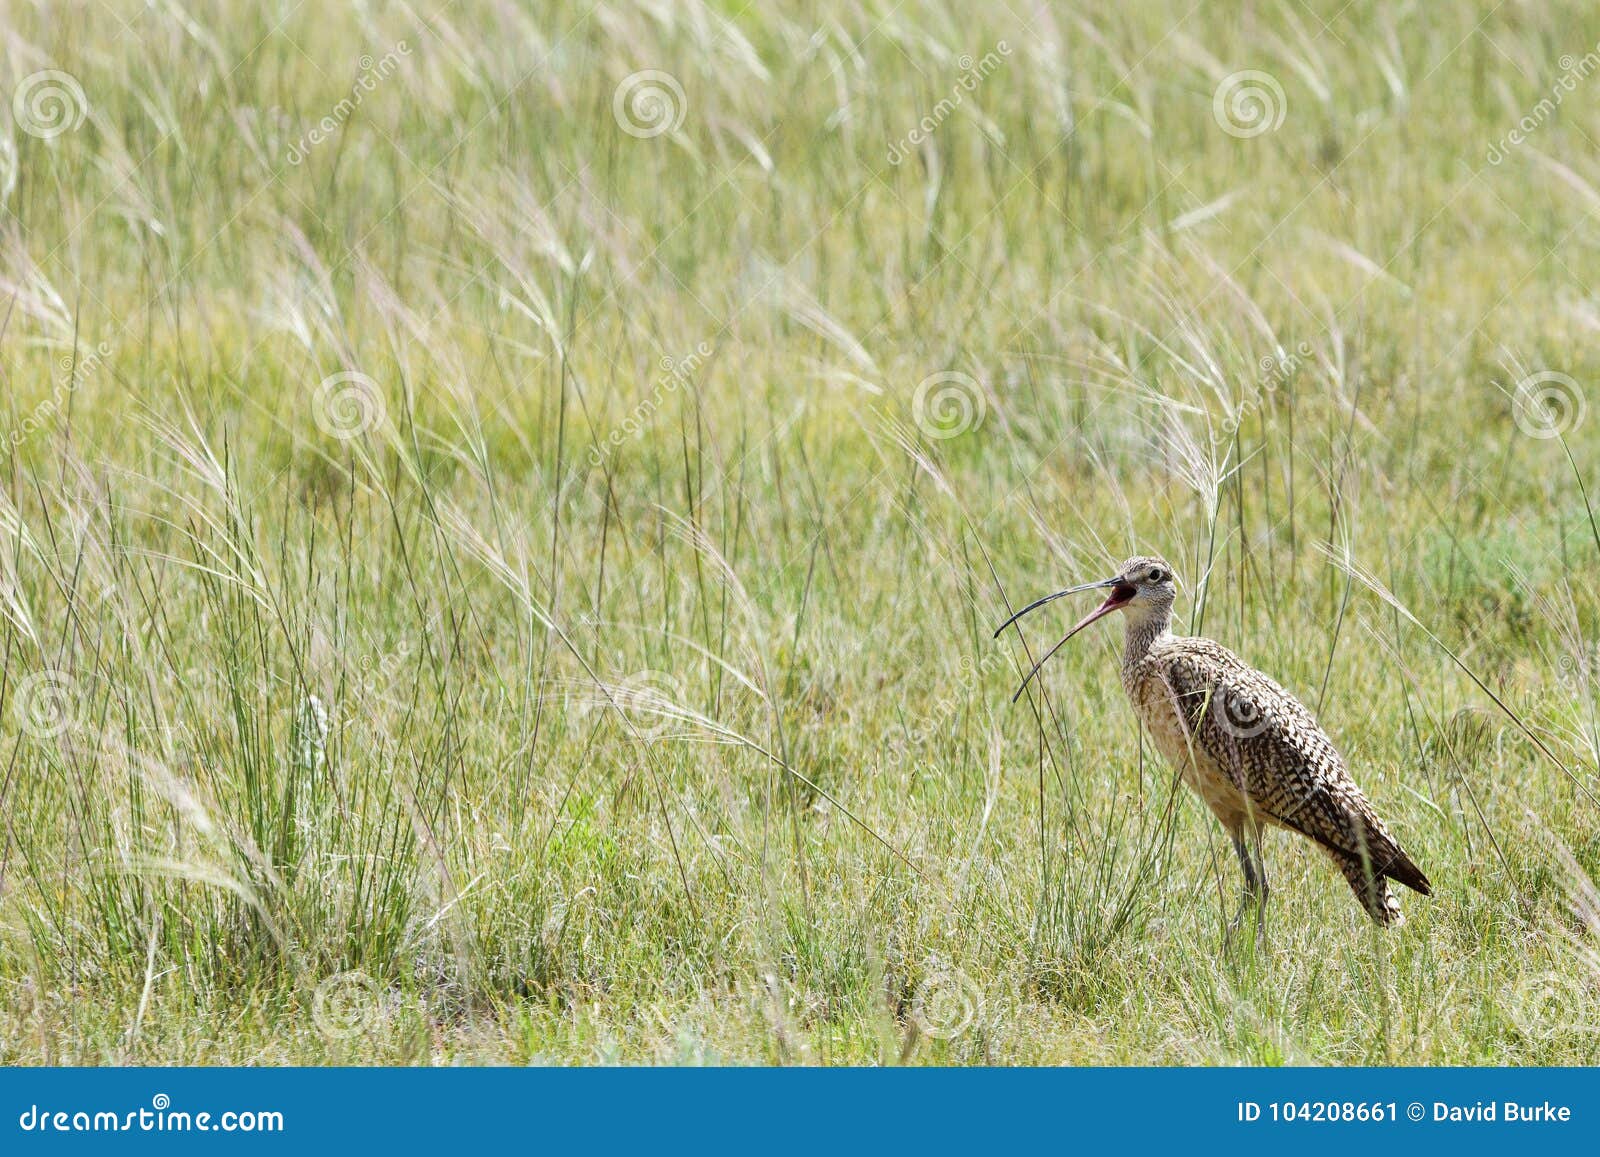 curlew shorebird bird grass prairie